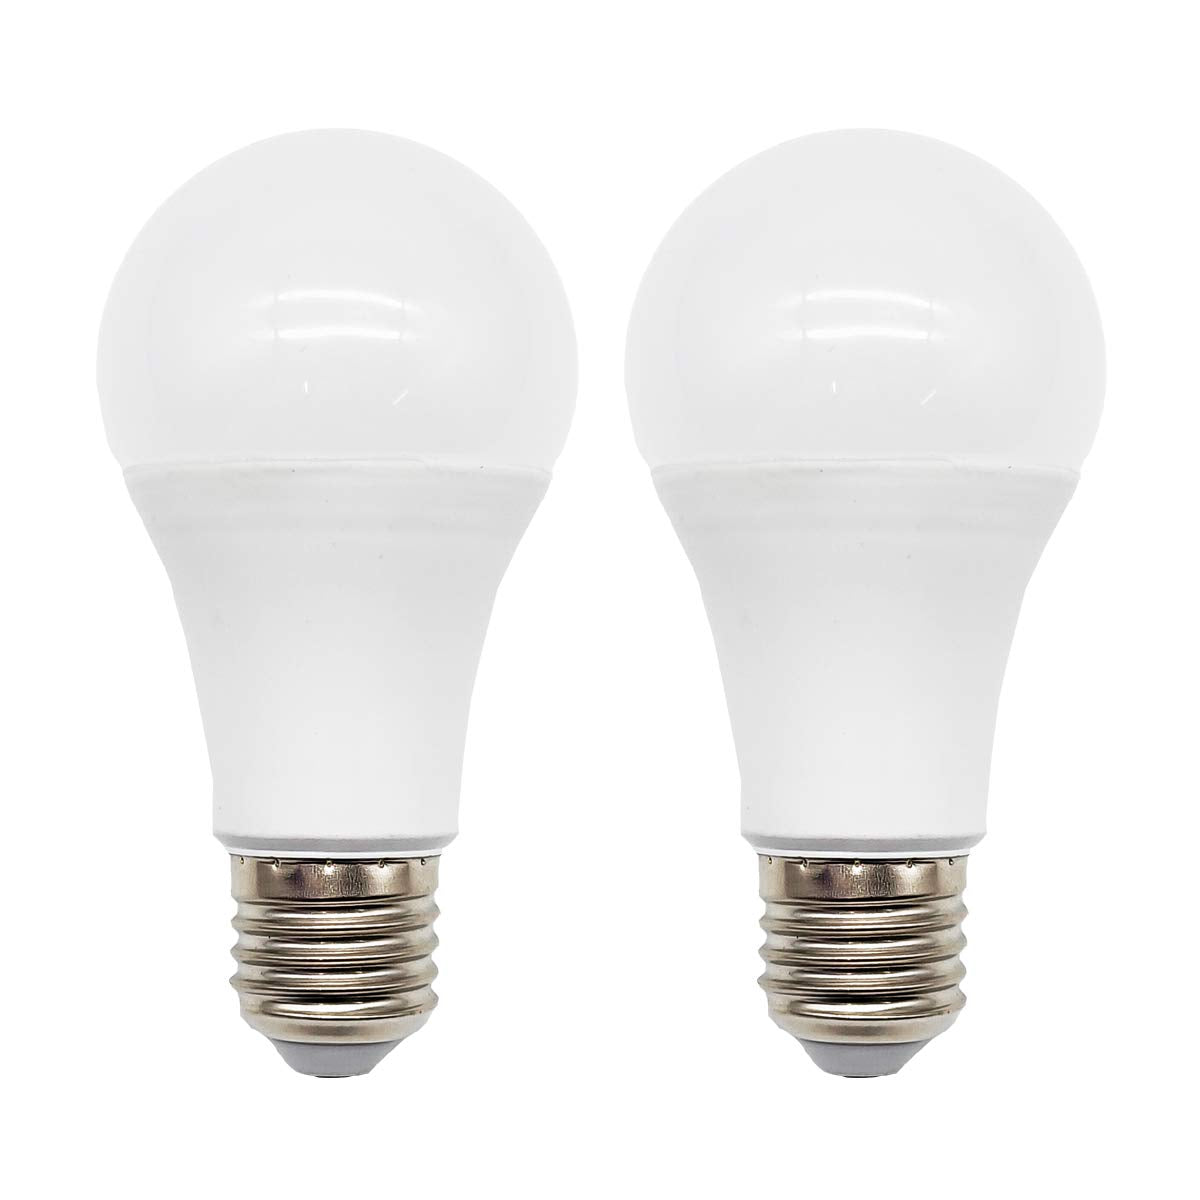 E27 LED Light Bulbs,Edison Screw in Light Bulb,12W White 6500K Energy Saving Light Bulb, Non-dimmable(2 Pack)